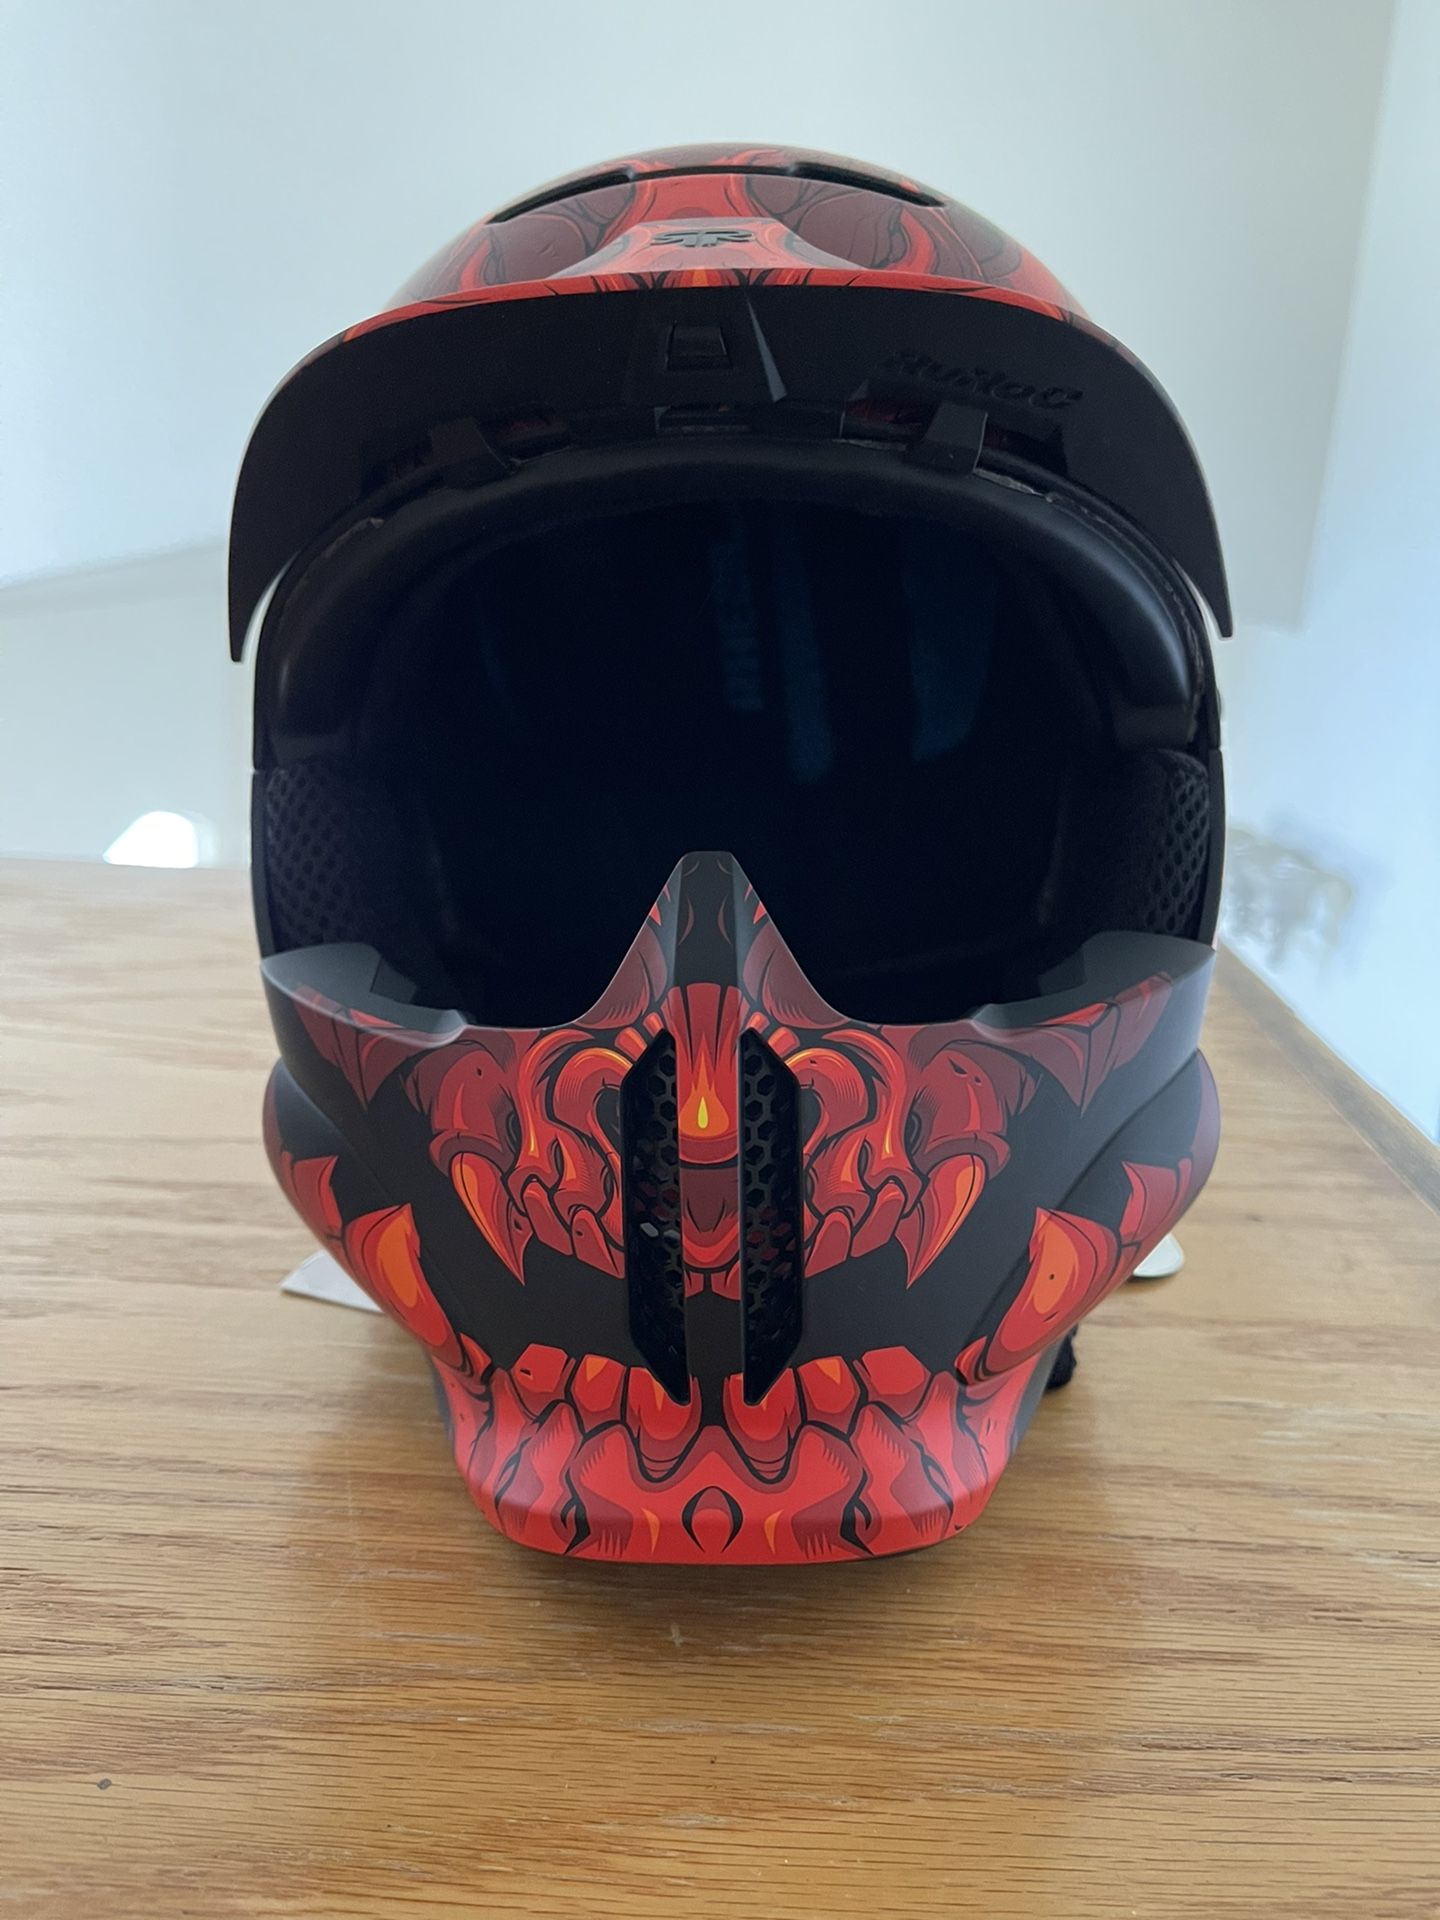 Ruroc RG1-DX Snowboarding Helmet Never Been Used!